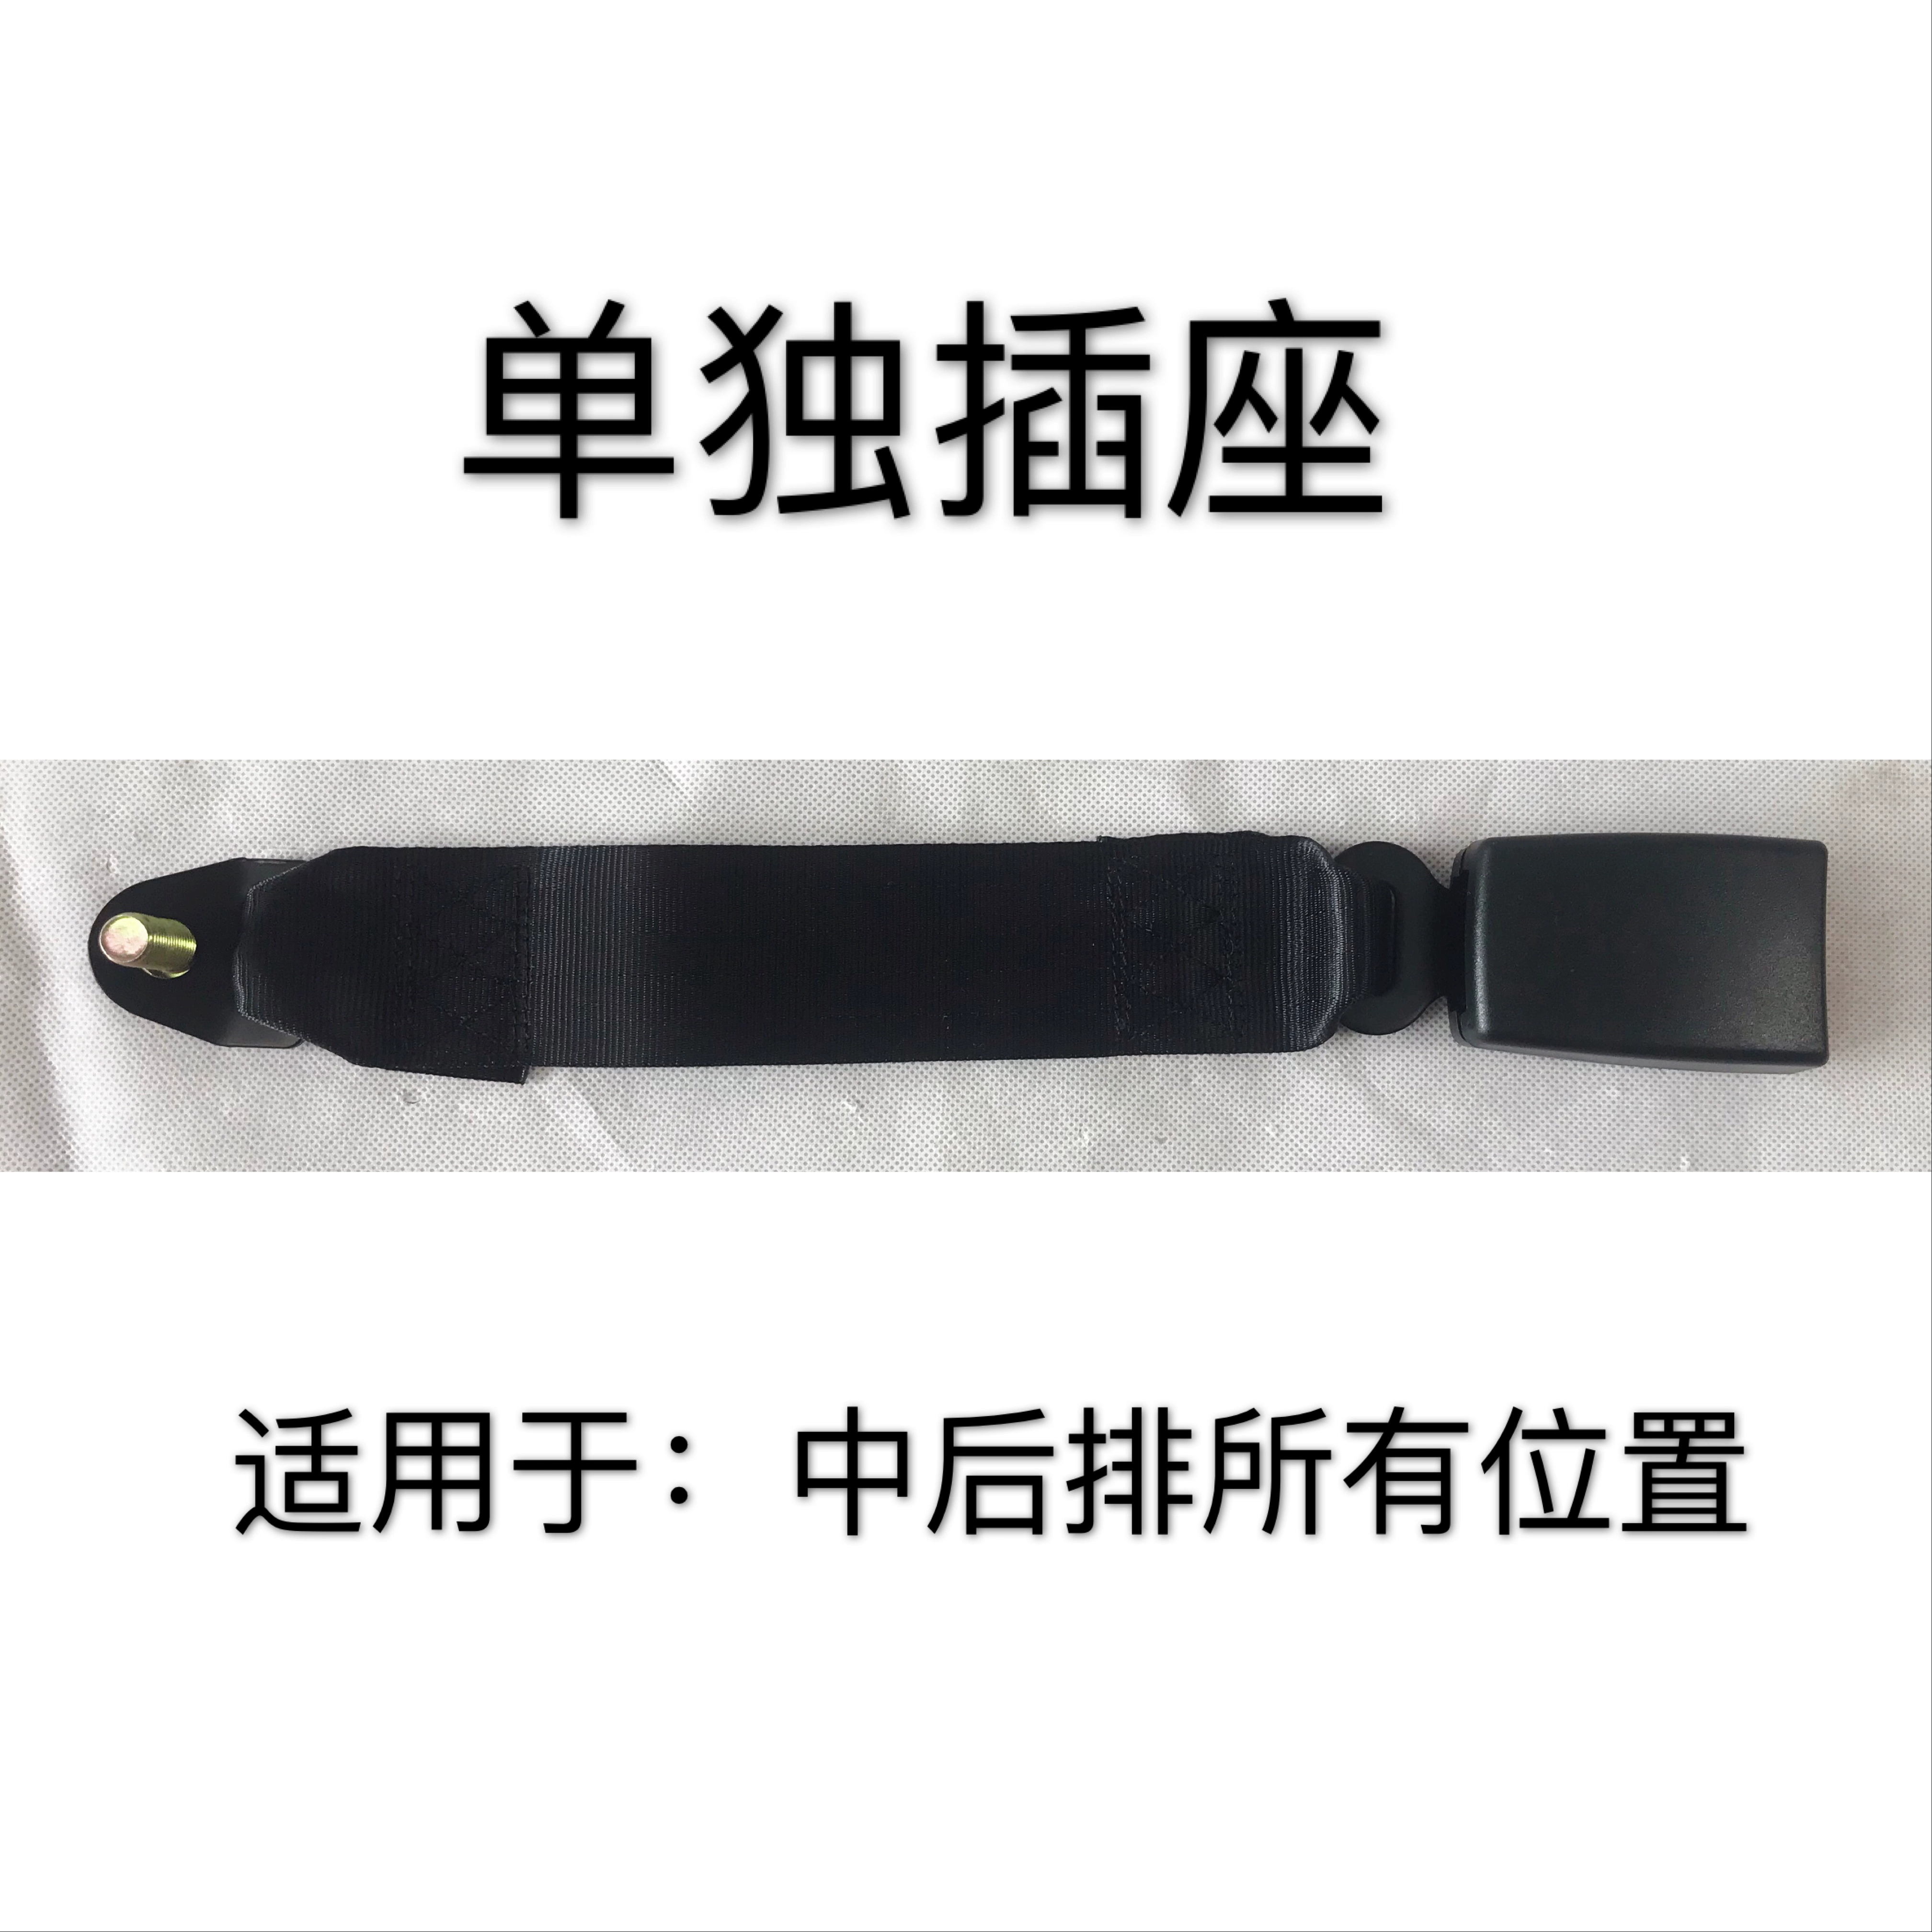 đai an toàn Wulingzhiguang 3671 6376 6388 6390 6400 6389 Xingwangzhong dây an toàn hàng ghế sau đai bảo hộ toàn thân dây đeo an toàn toàn thân 